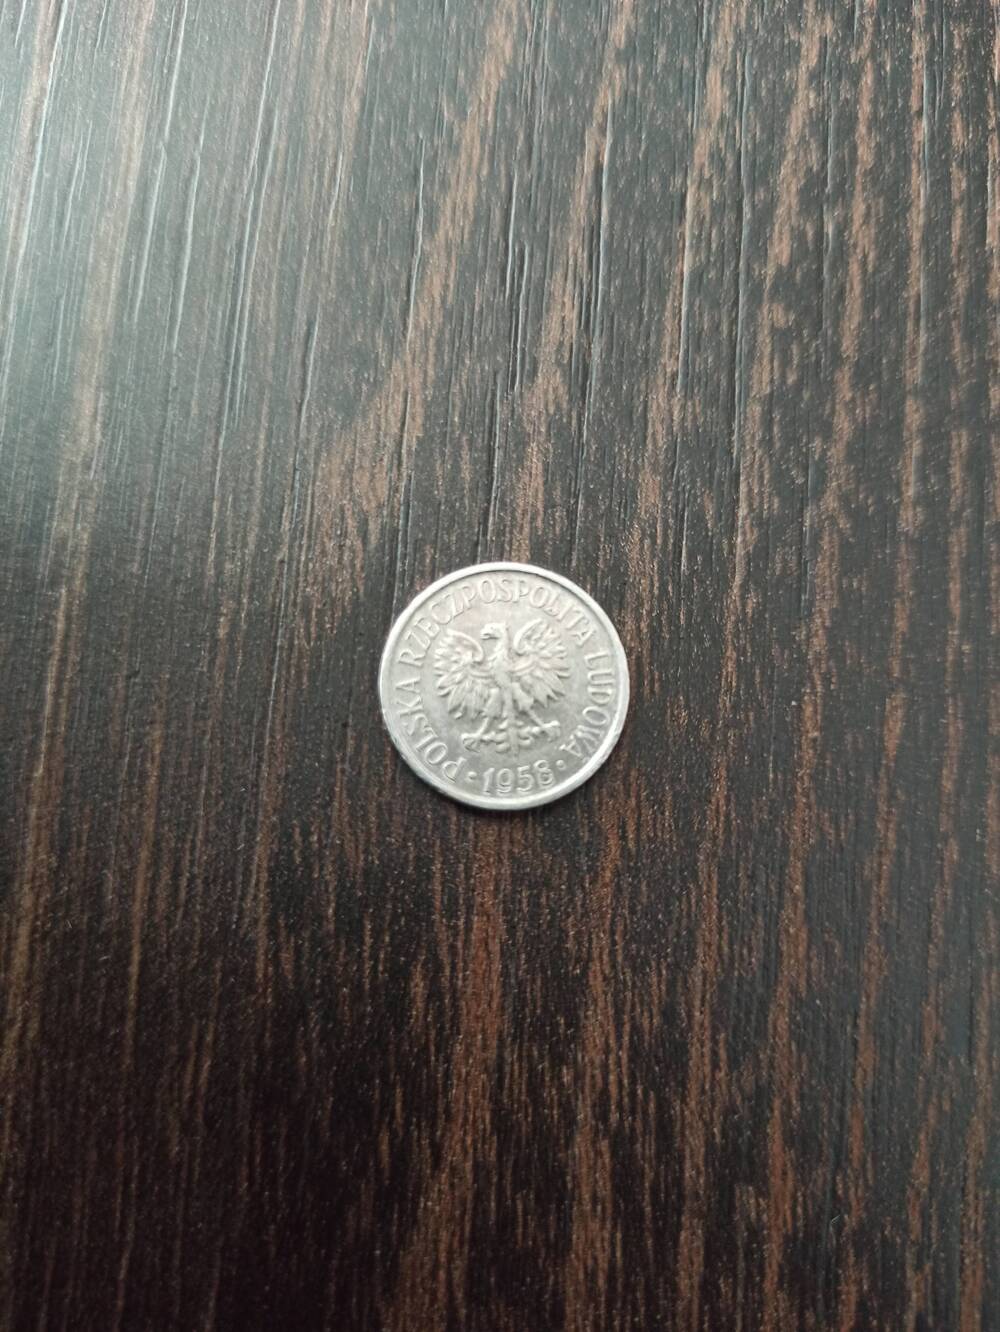 Нумизматика. Монета  Польши достоинством 5 грошей 1958 года. Лицевая сторона – «5 грошей», слева изображена ветка. Гербовая сторона – герб.